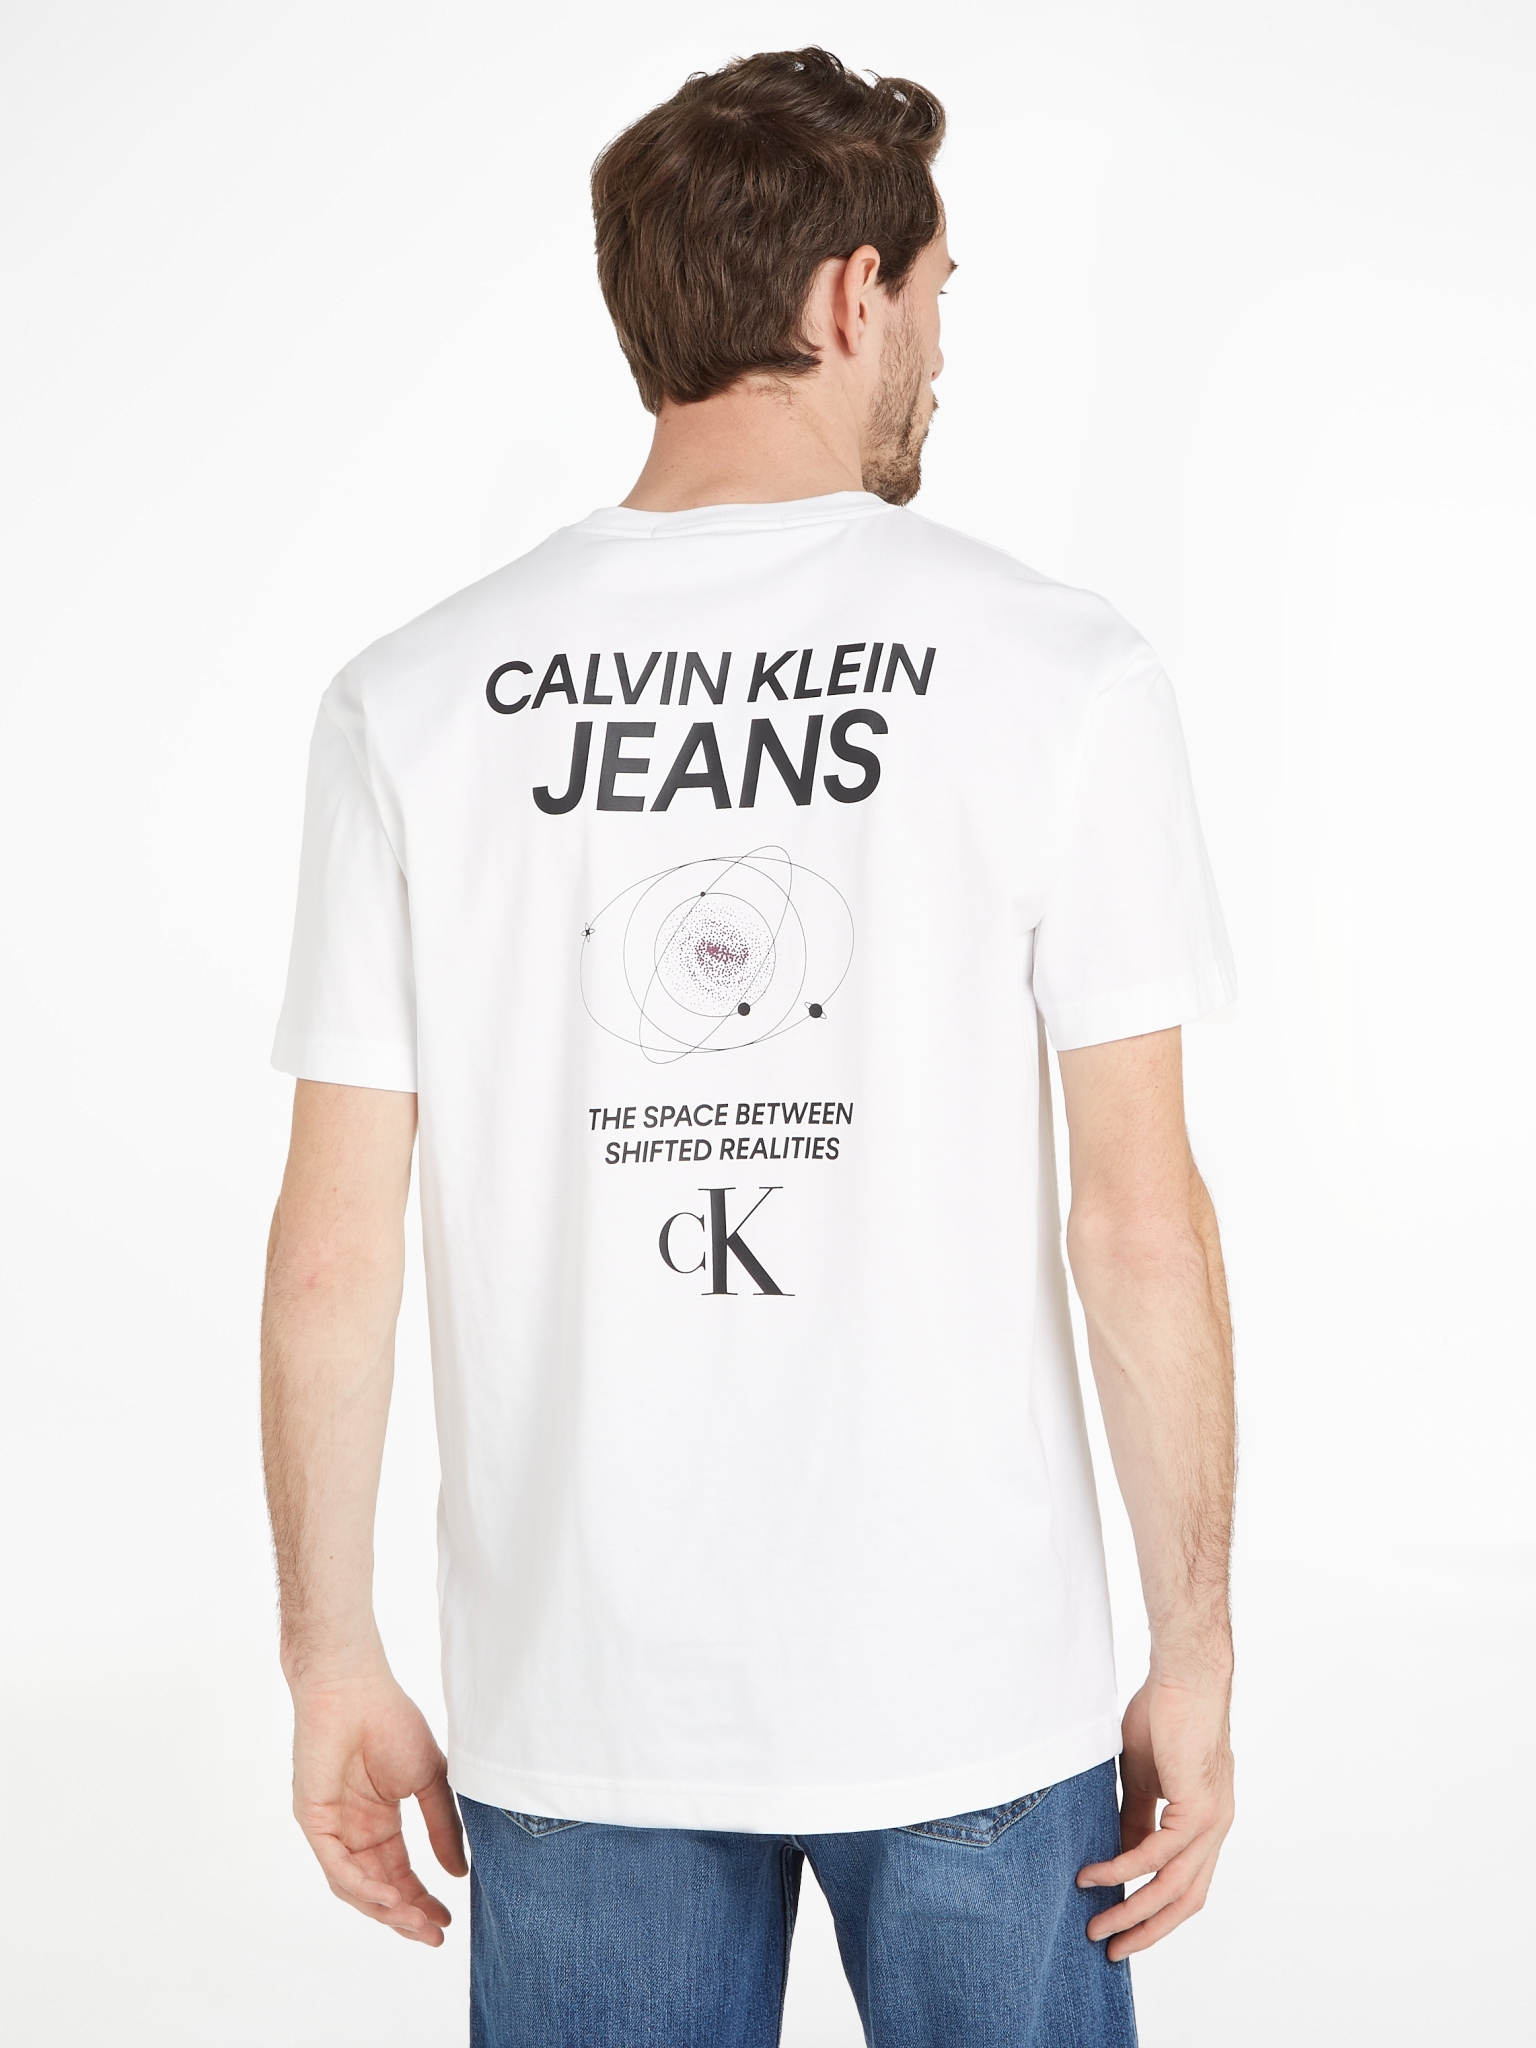 CALVIN KLEIN JEANS T-Shirt aus Baumwolle mit Logo am Rücken 10716438 kaufen  | WÖHRL